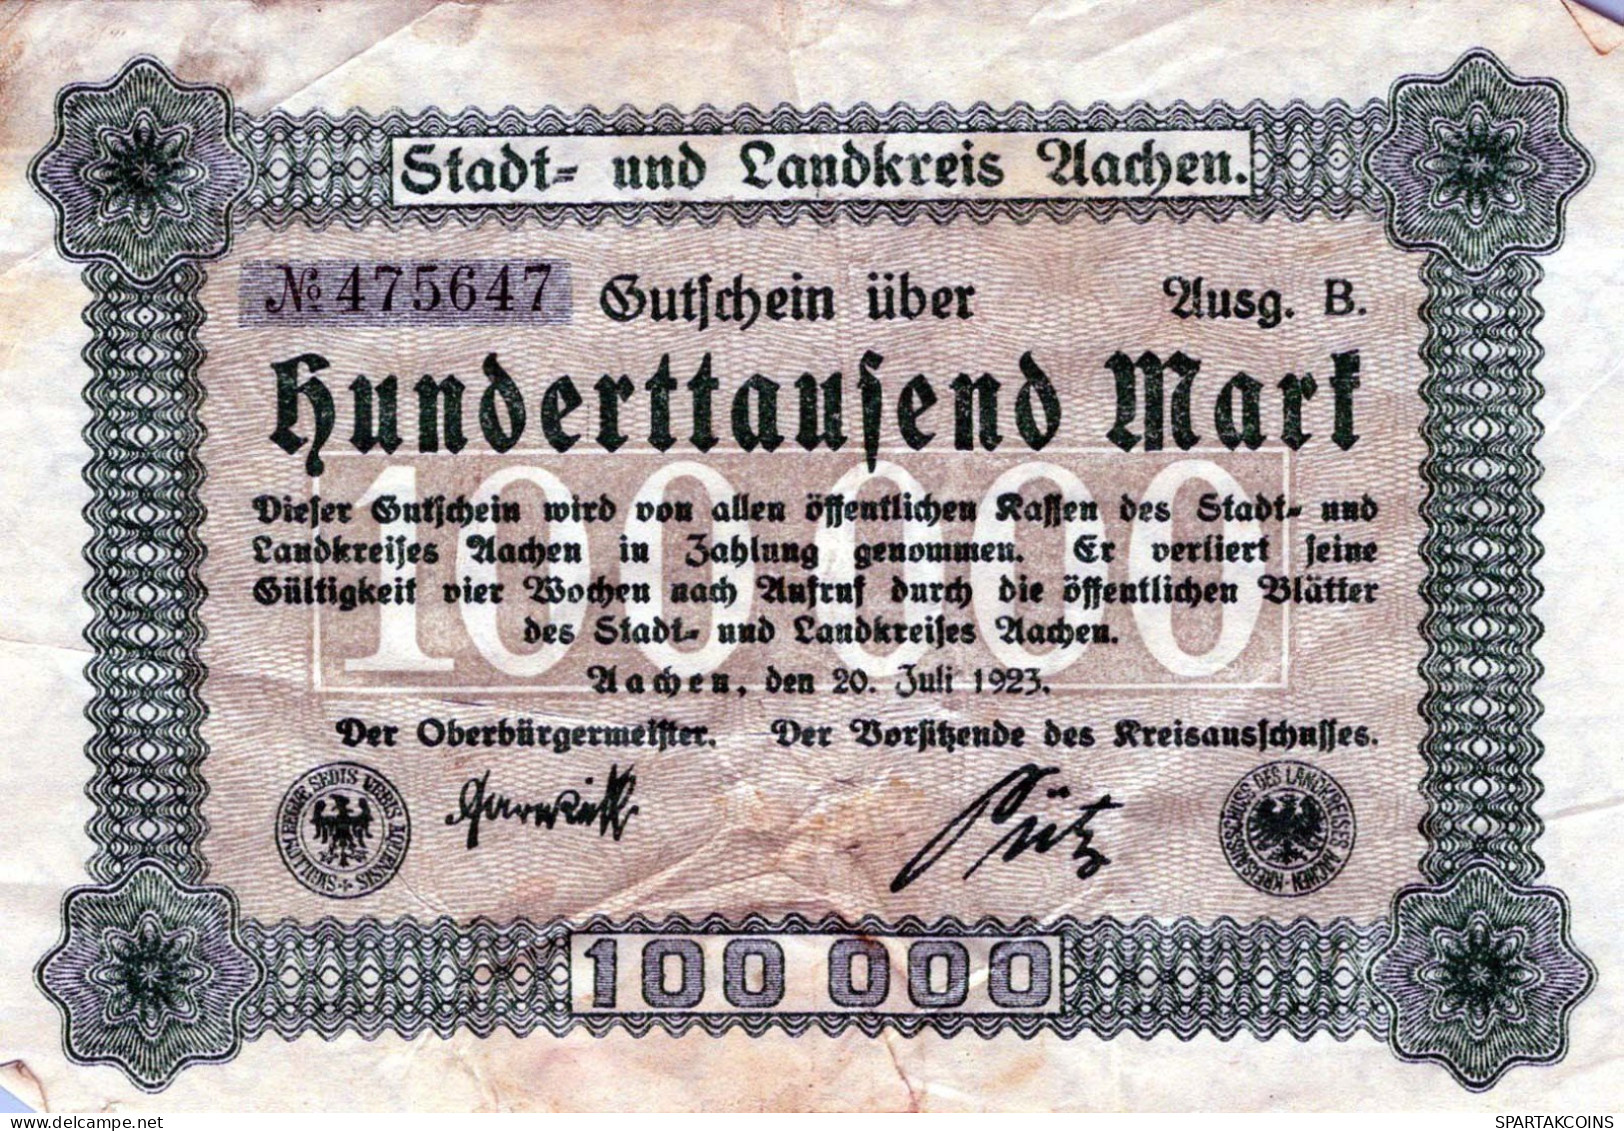 100000 MARK 1923 Stadt AACHEN Rhine DEUTSCHLAND Papiergeld Banknote #PK942 - [11] Emissions Locales